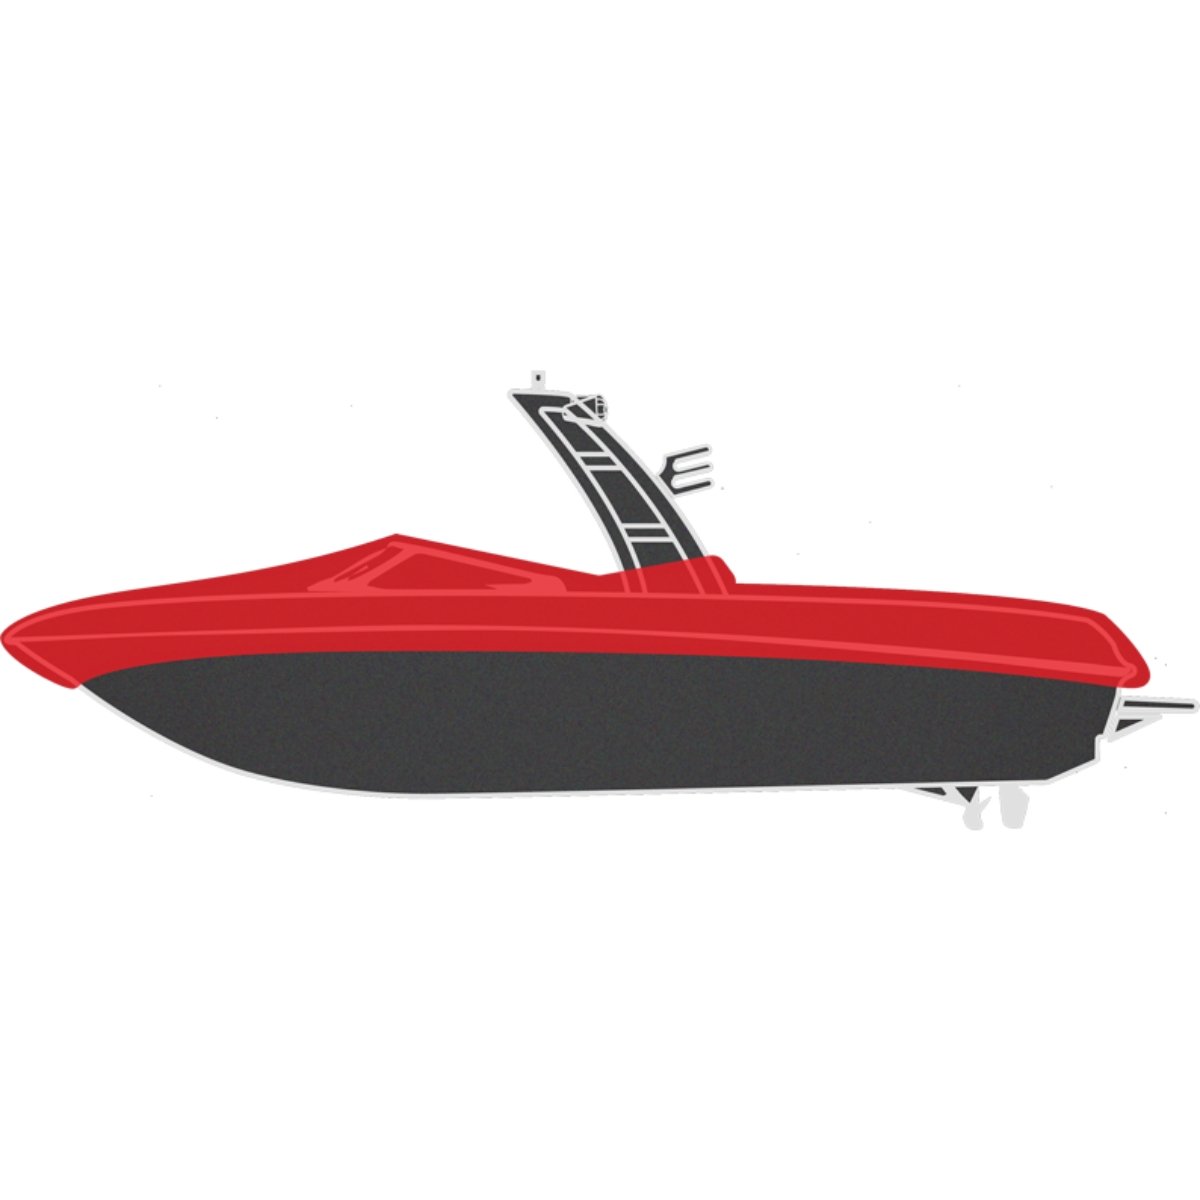 Sewlong Custom Cinch Boat Cover - BoardCo